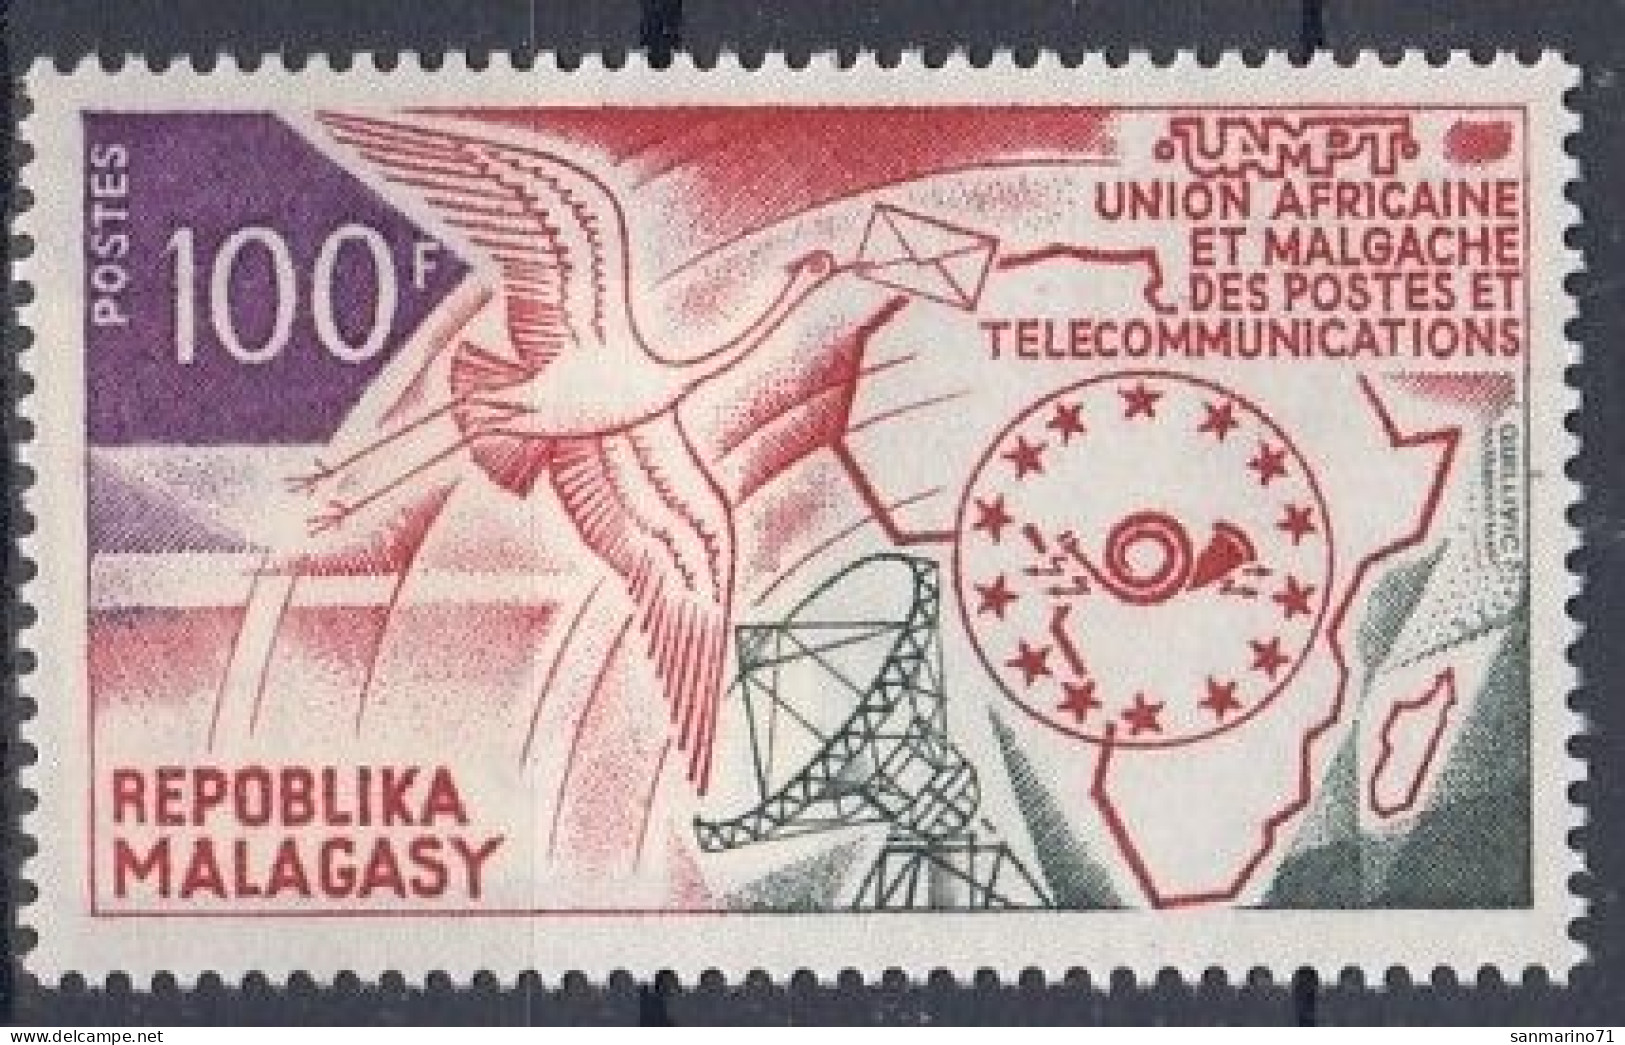 MADAGASCAR 697,unused - UPU (Universal Postal Union)